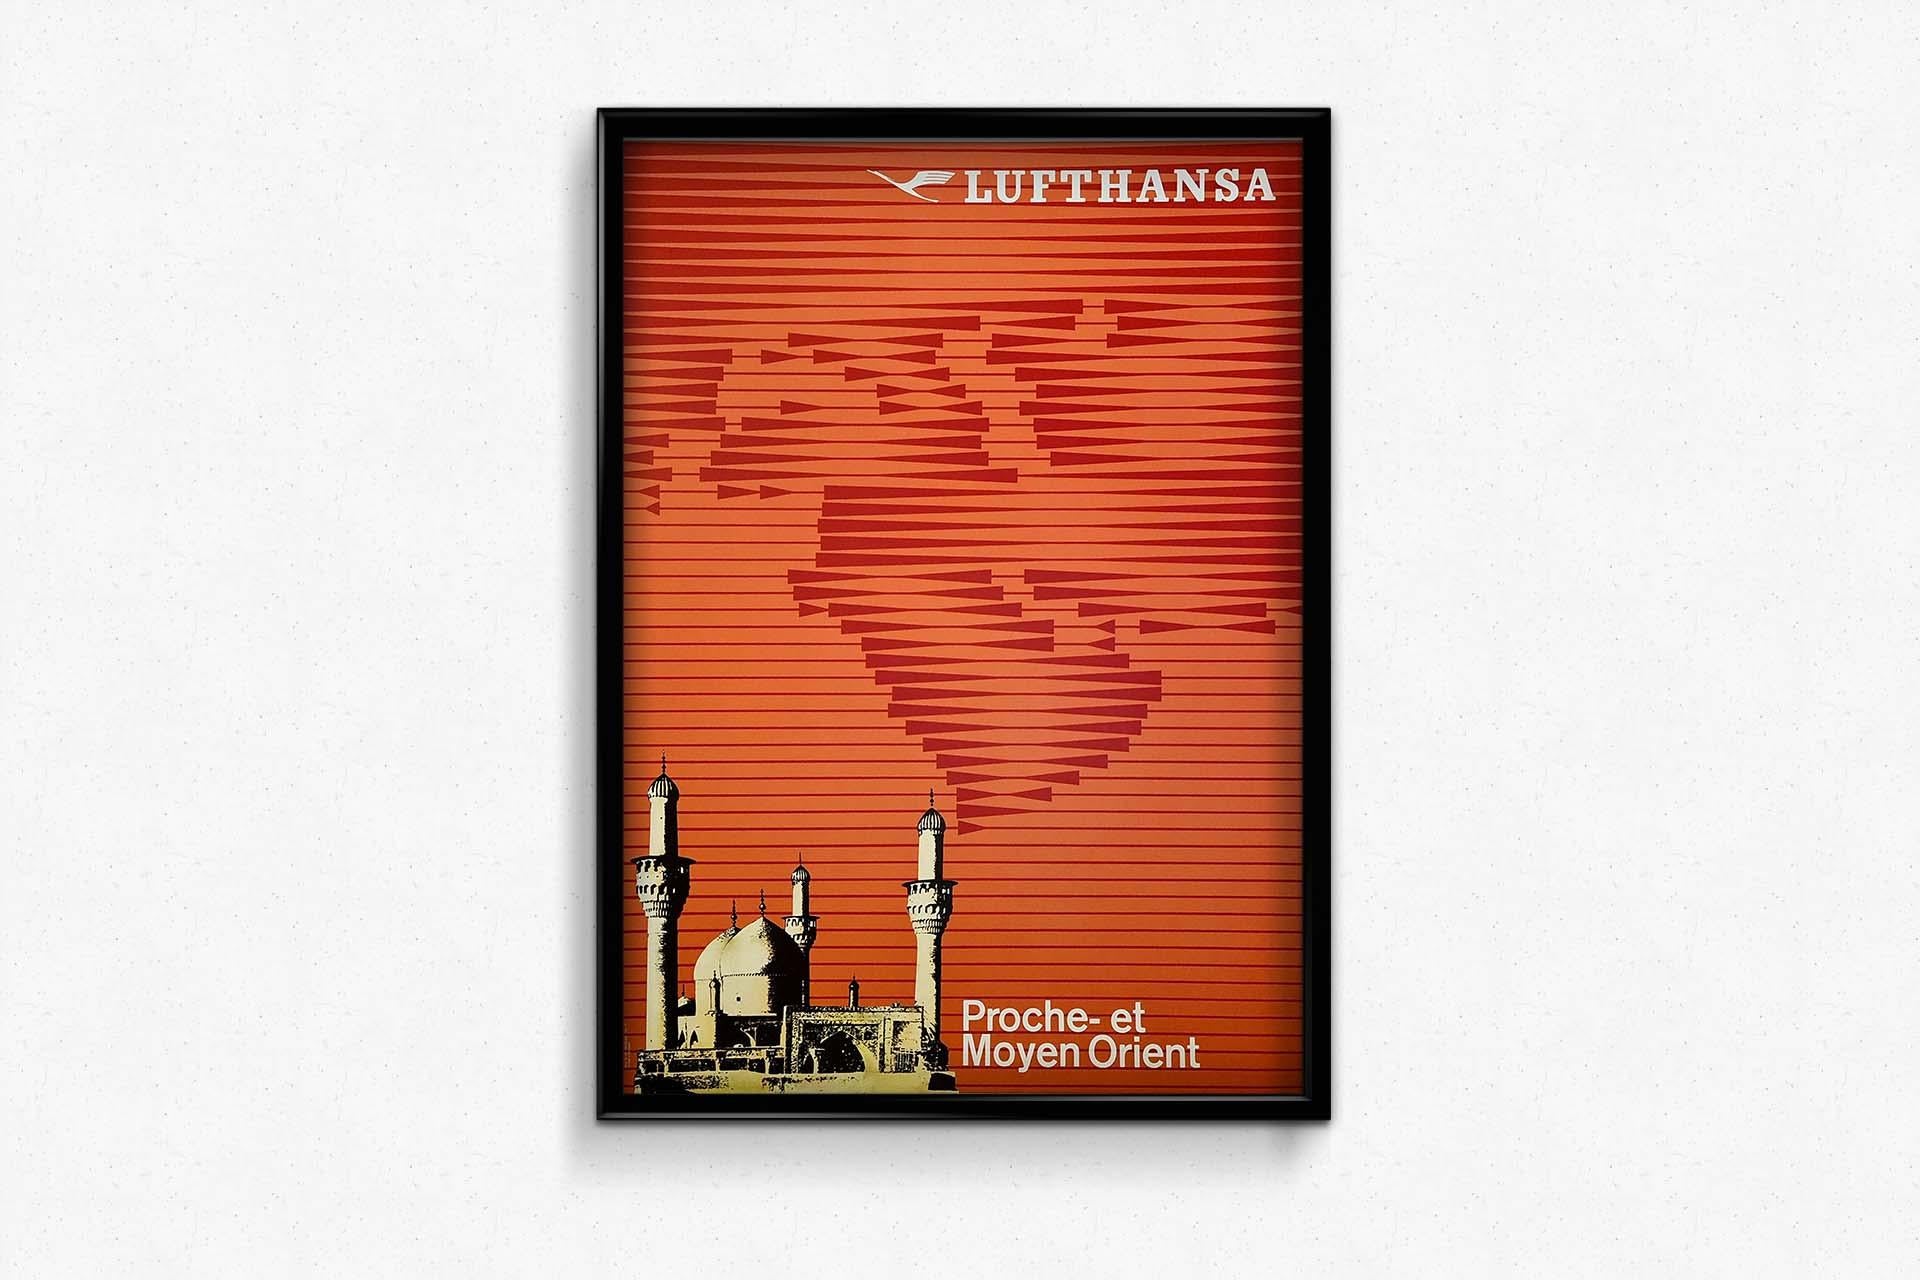 Belle affiche des années 50 pour la Lufthansa et ses voyages au Moyen-Orient.

Compagnie aérienne - Tourisme - Religion- Mosquée

Allemagne